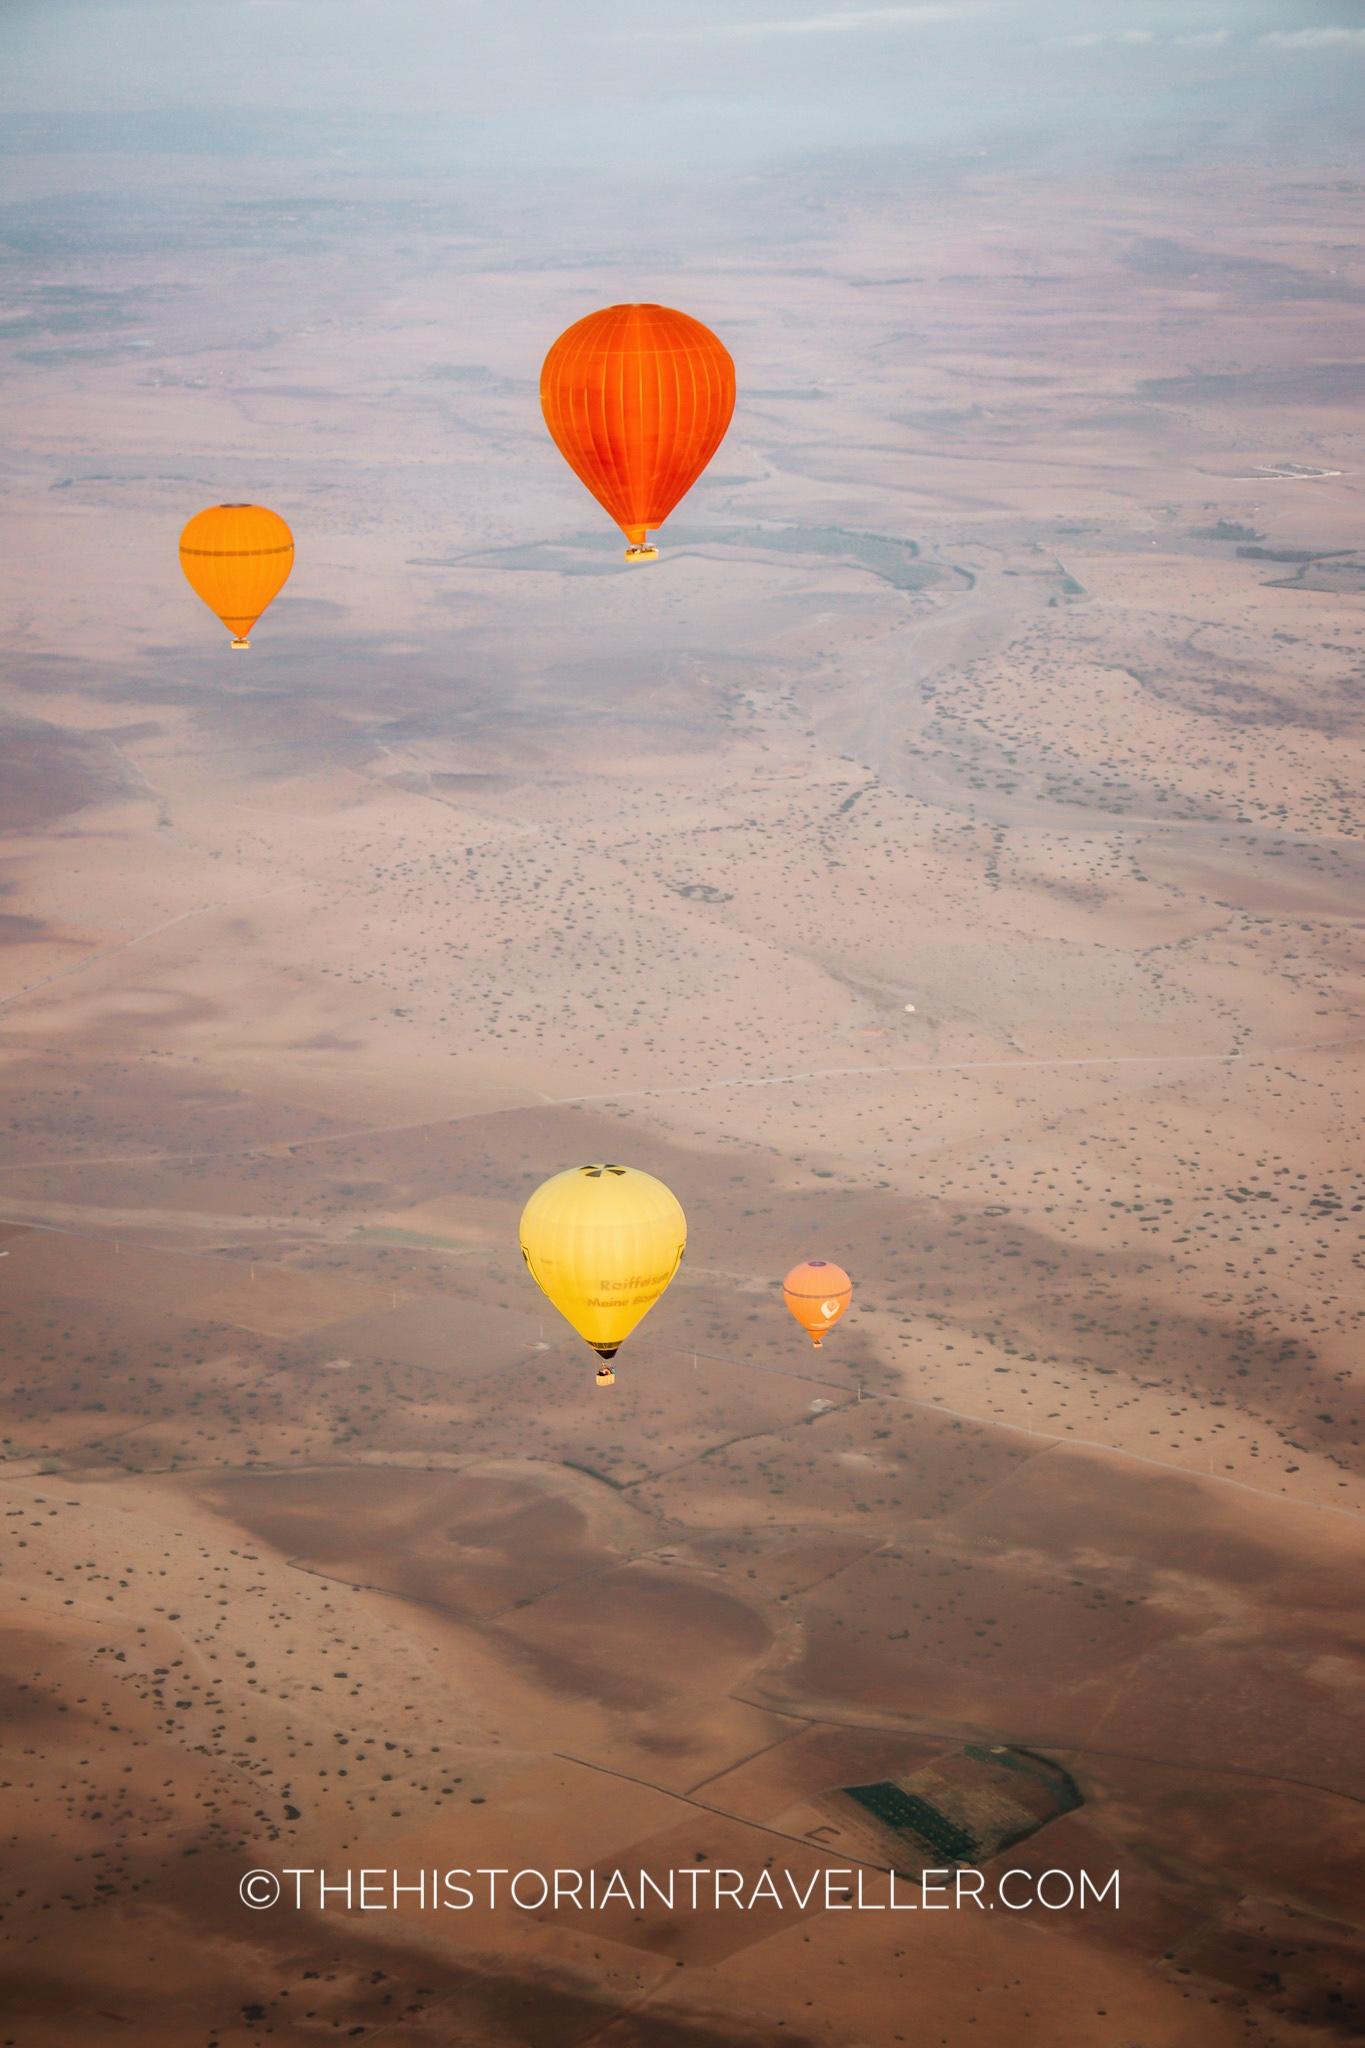 Hot air balloon in Marrakech - 4 hot air balloons flying